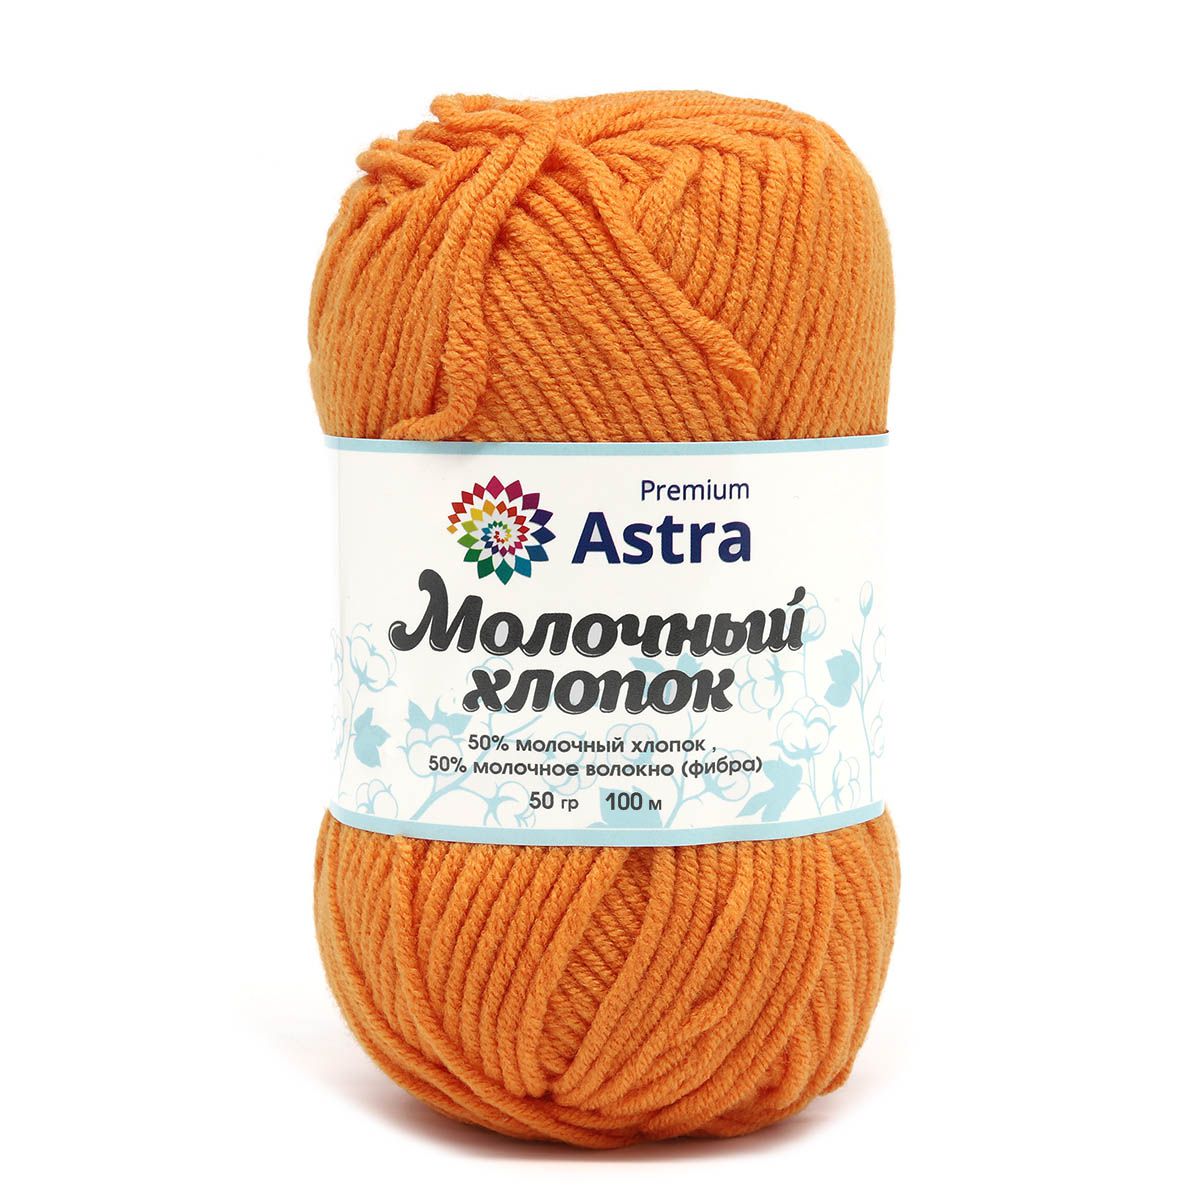 Пряжа для вязания Astra Premium milk cotton хлопок акрил 50 гр 100 м 64 оранжевый 3 мотка - фото 10